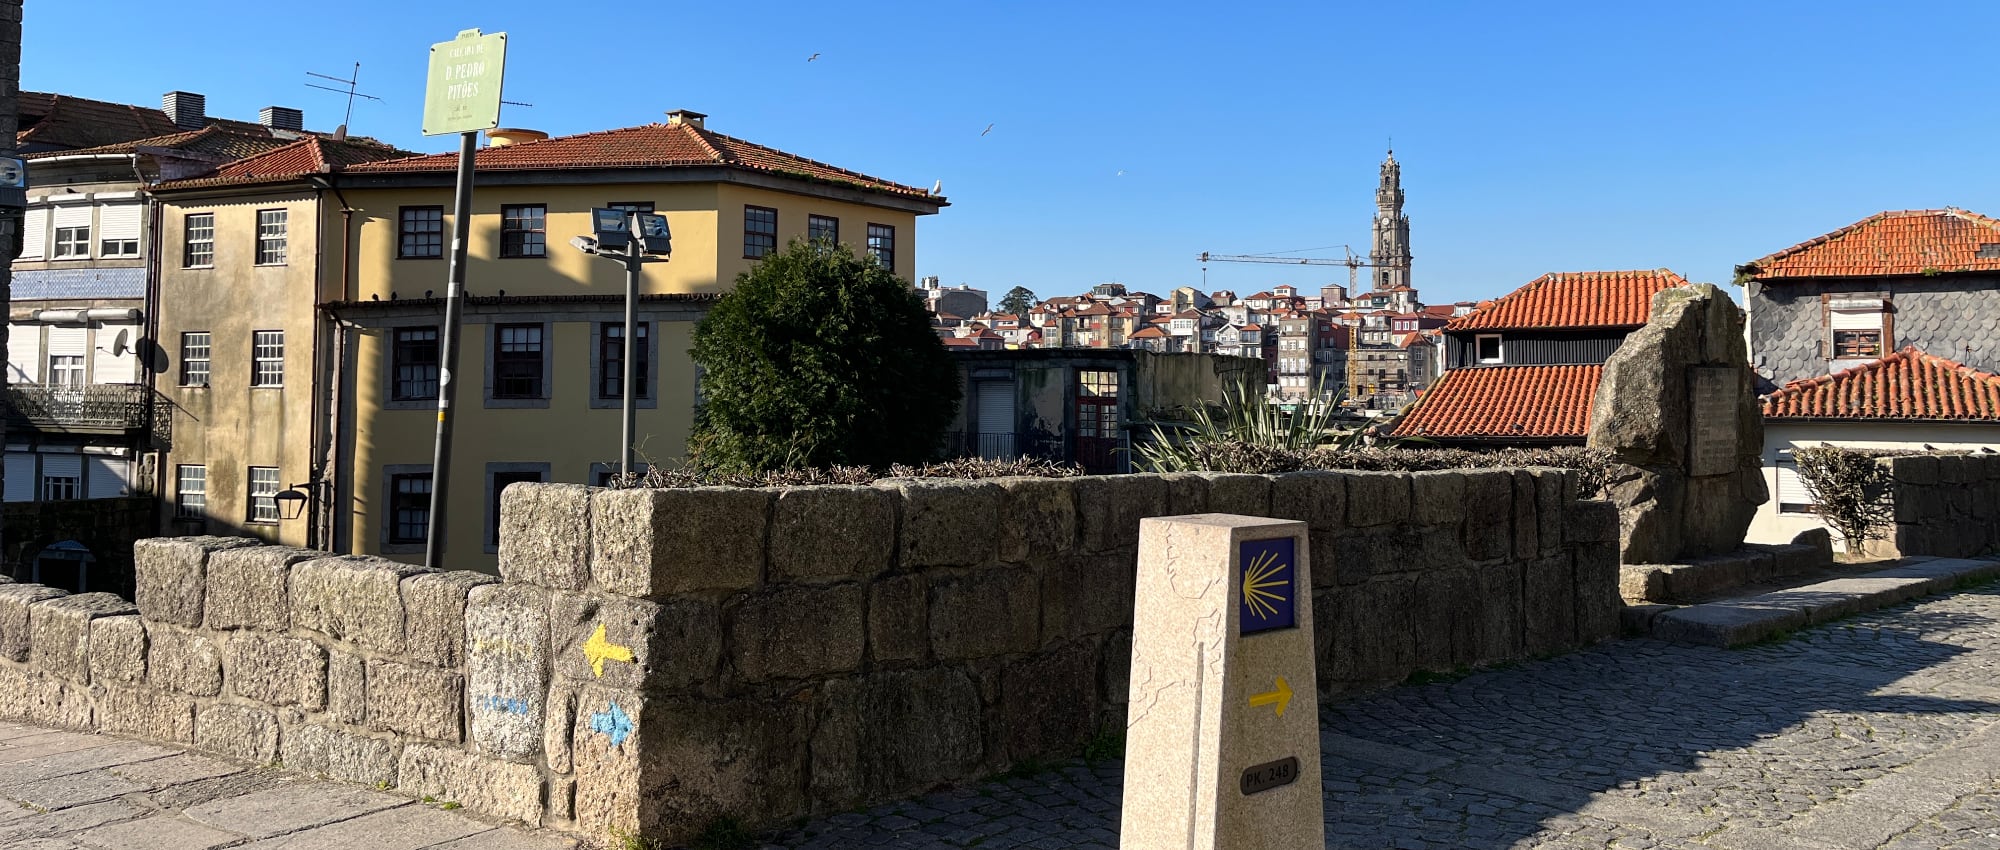 Where to start the Camino in Porto?